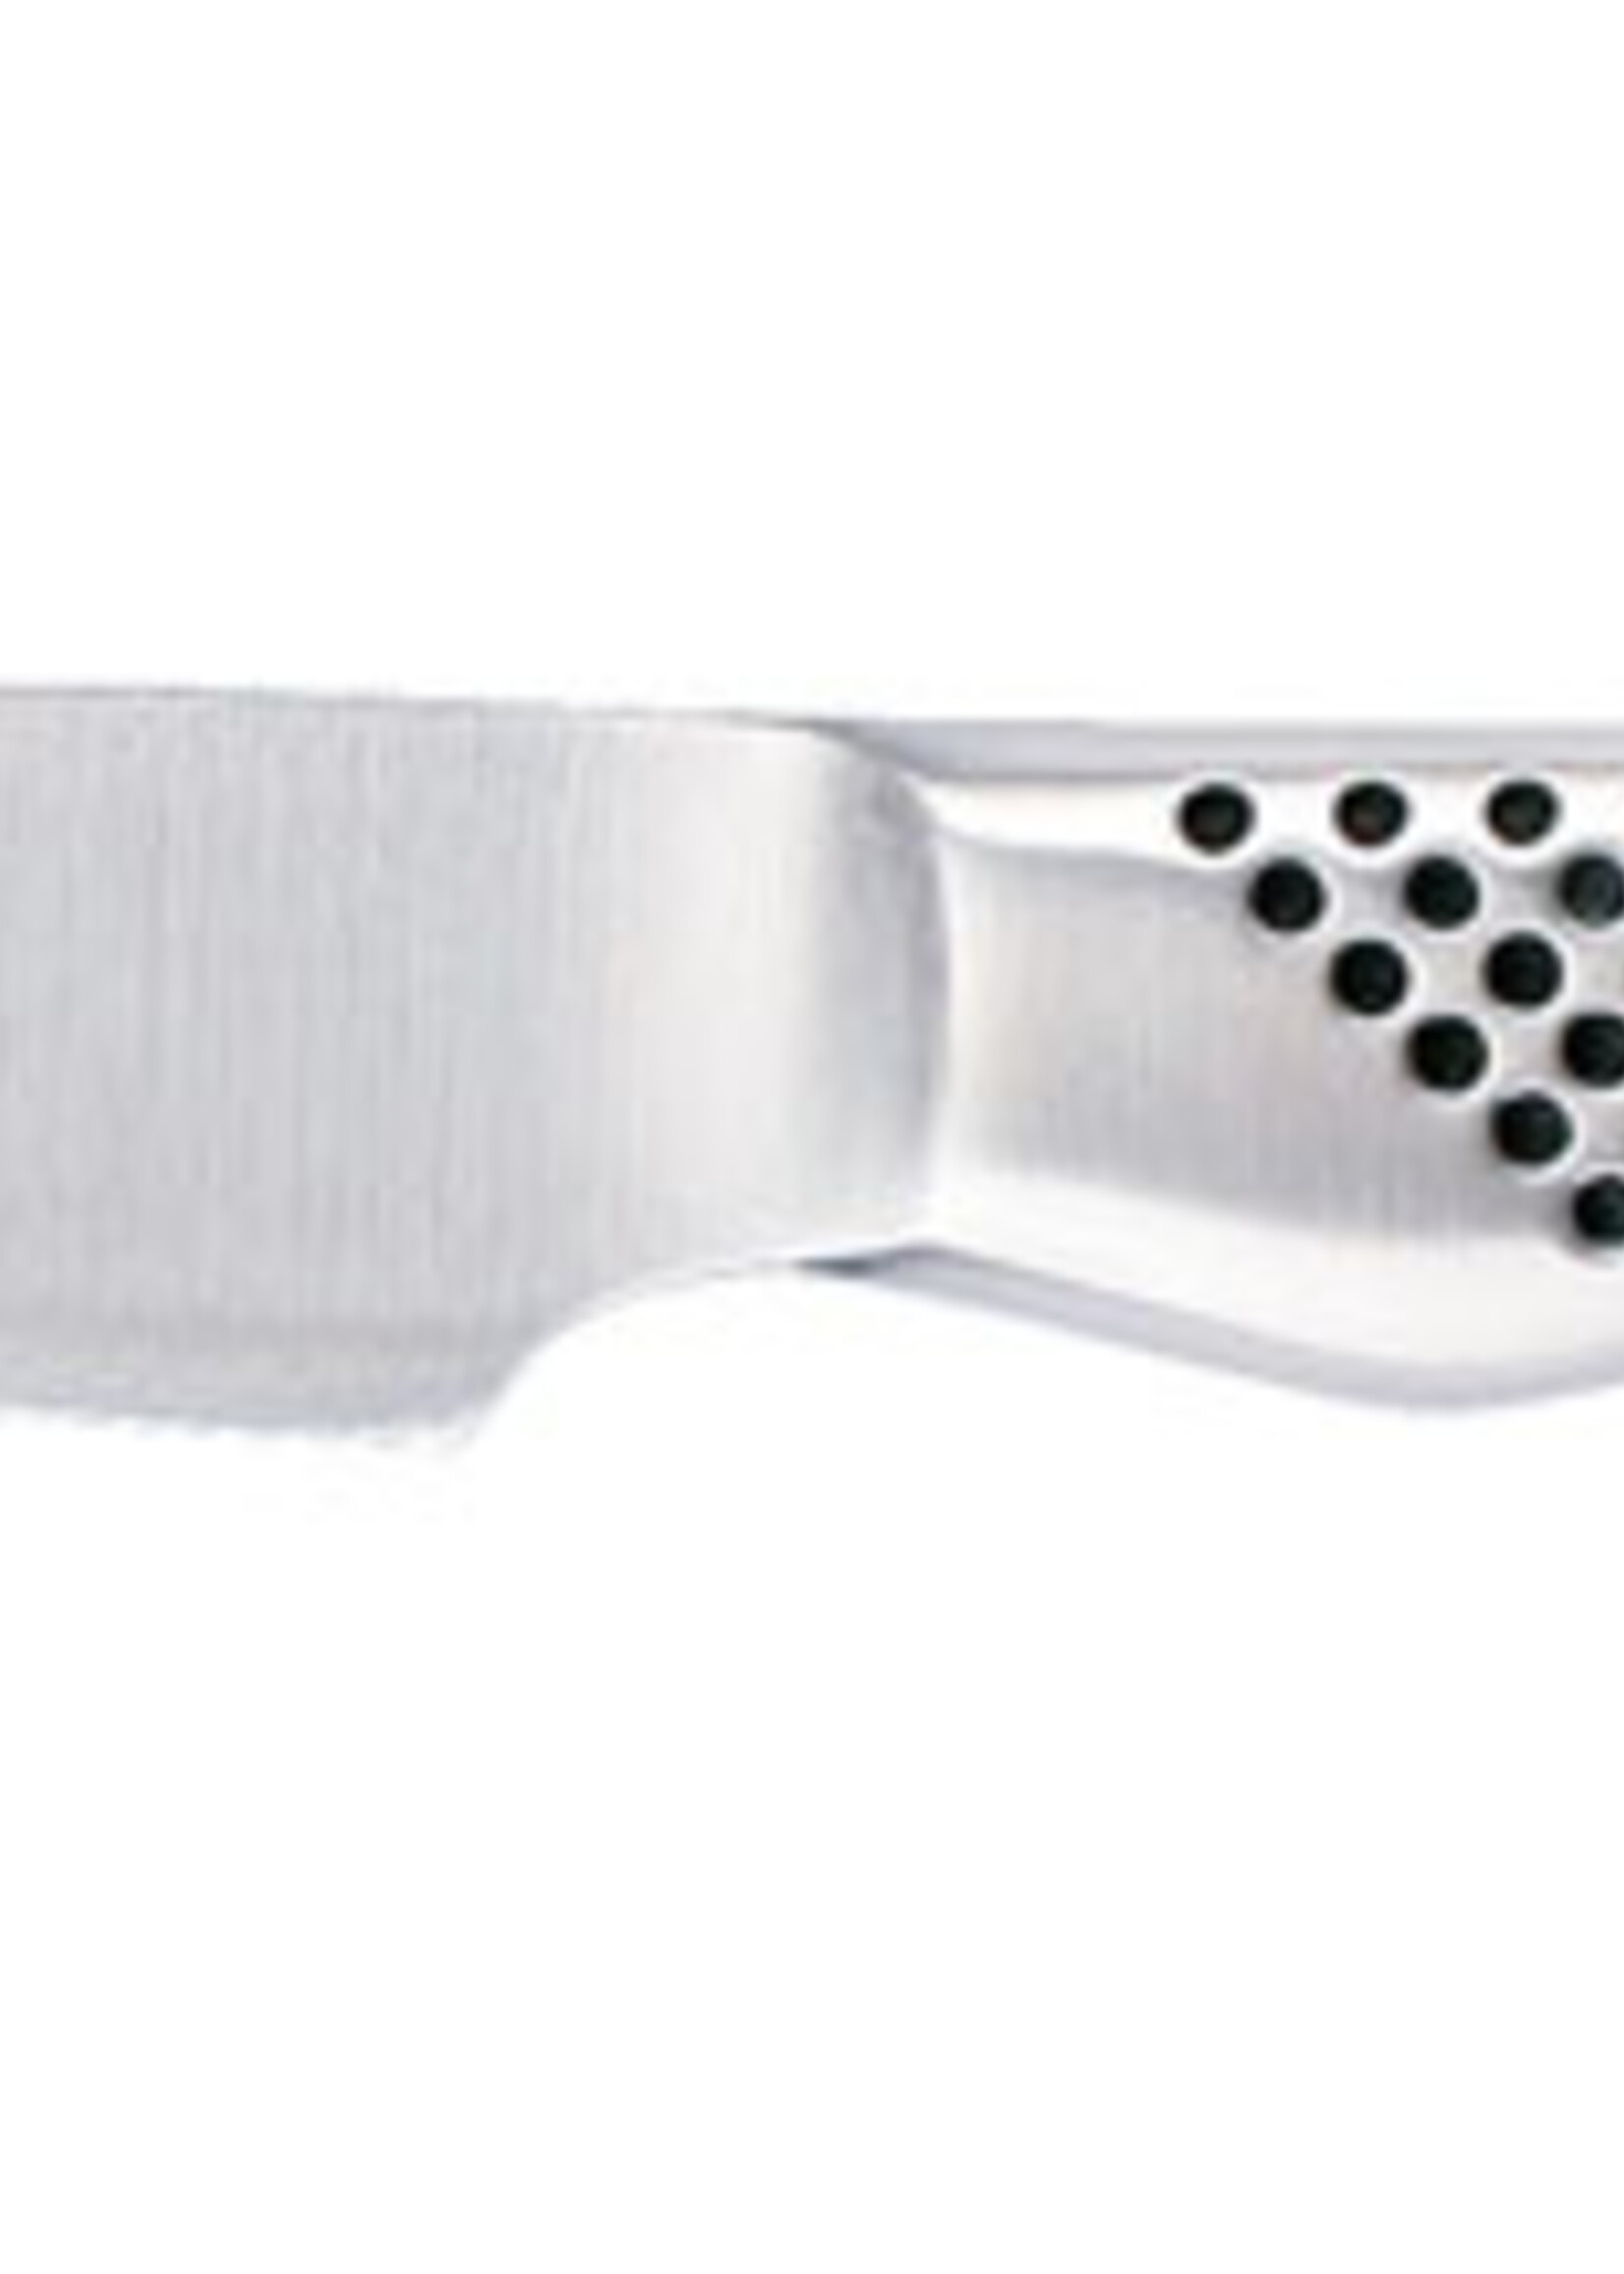 GLOBAL Global - Set de couteaux - G773889- 3 pièces - Couteau de chef avec alvéoles, Couteau à steak/bureau et Couteau de chef de cuisine